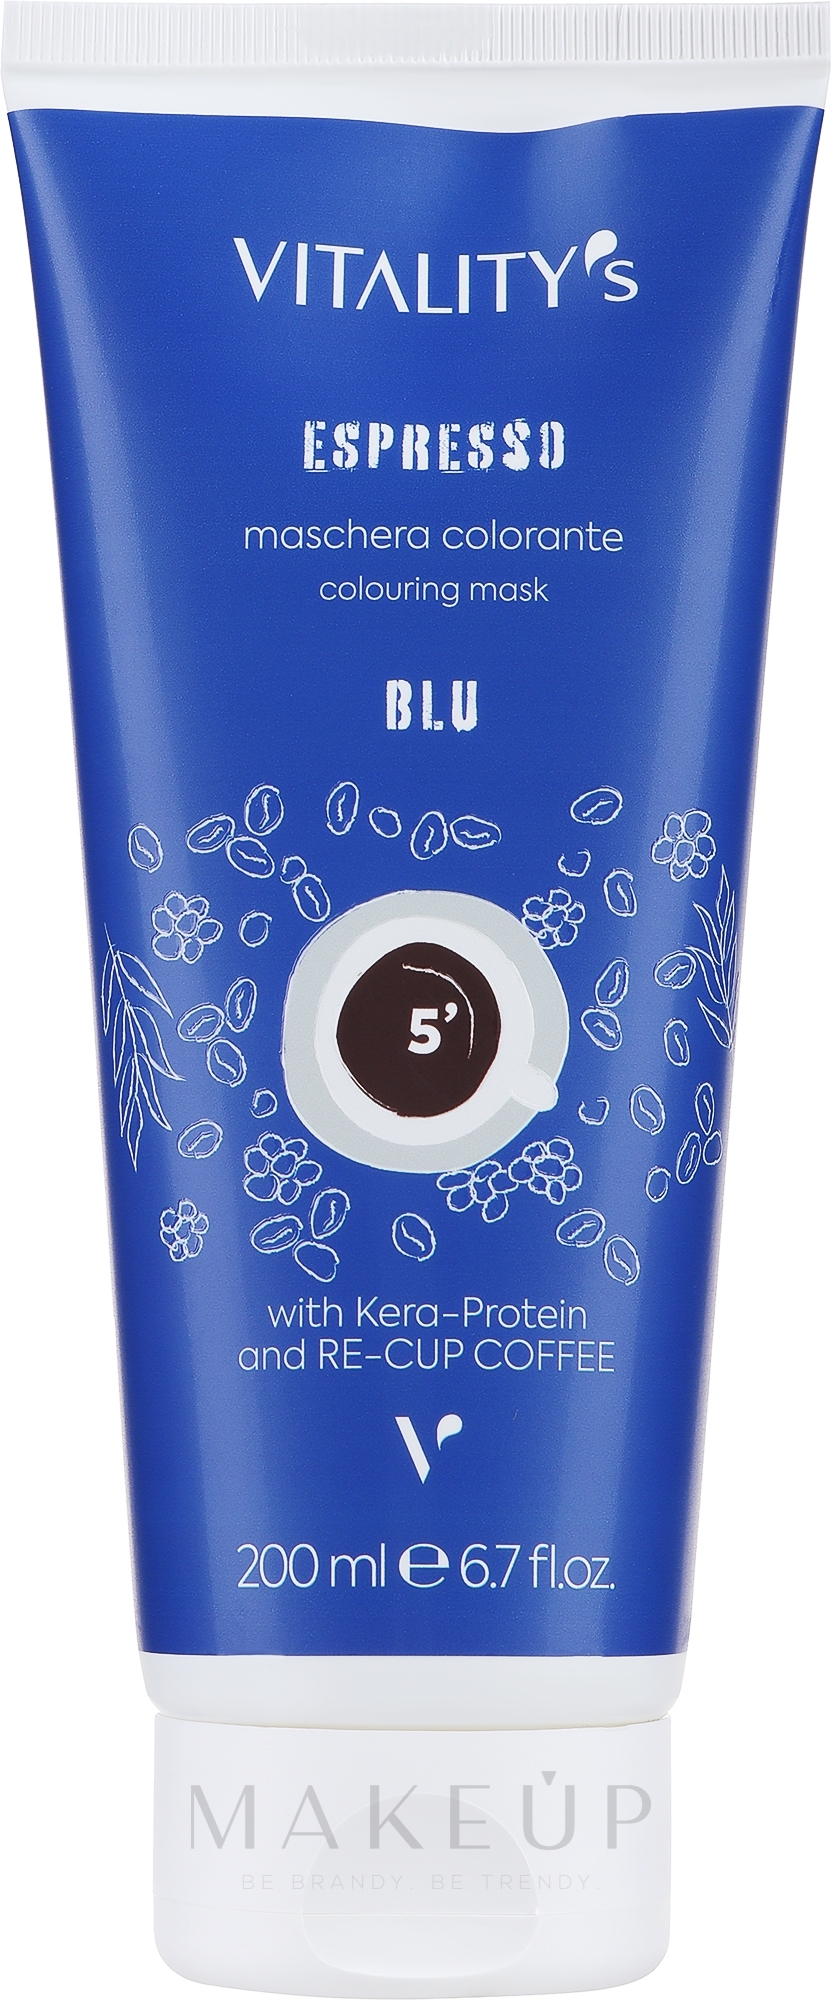 Tonisierende Maske für gefärbtes Haar ohne Ammoniak - Vitality`s Espresso Colouring Mask — Bild Blue